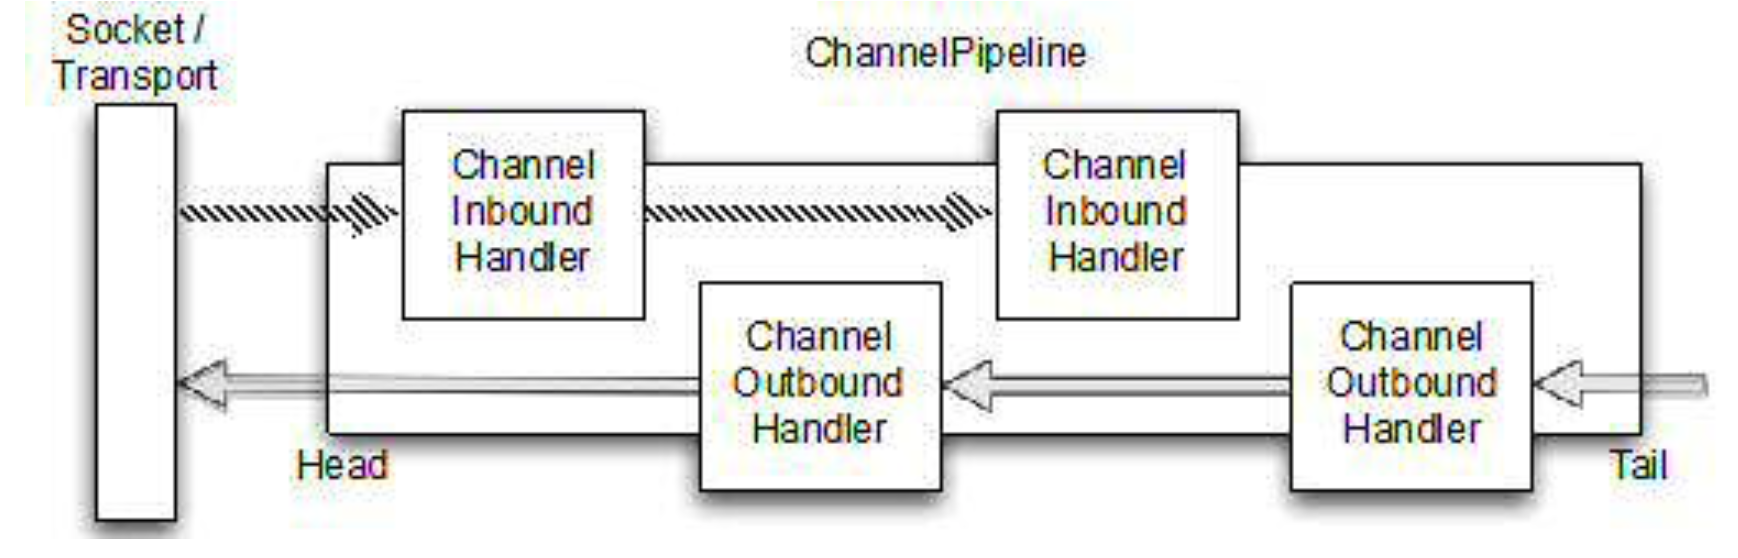 ChannelPipeline示例